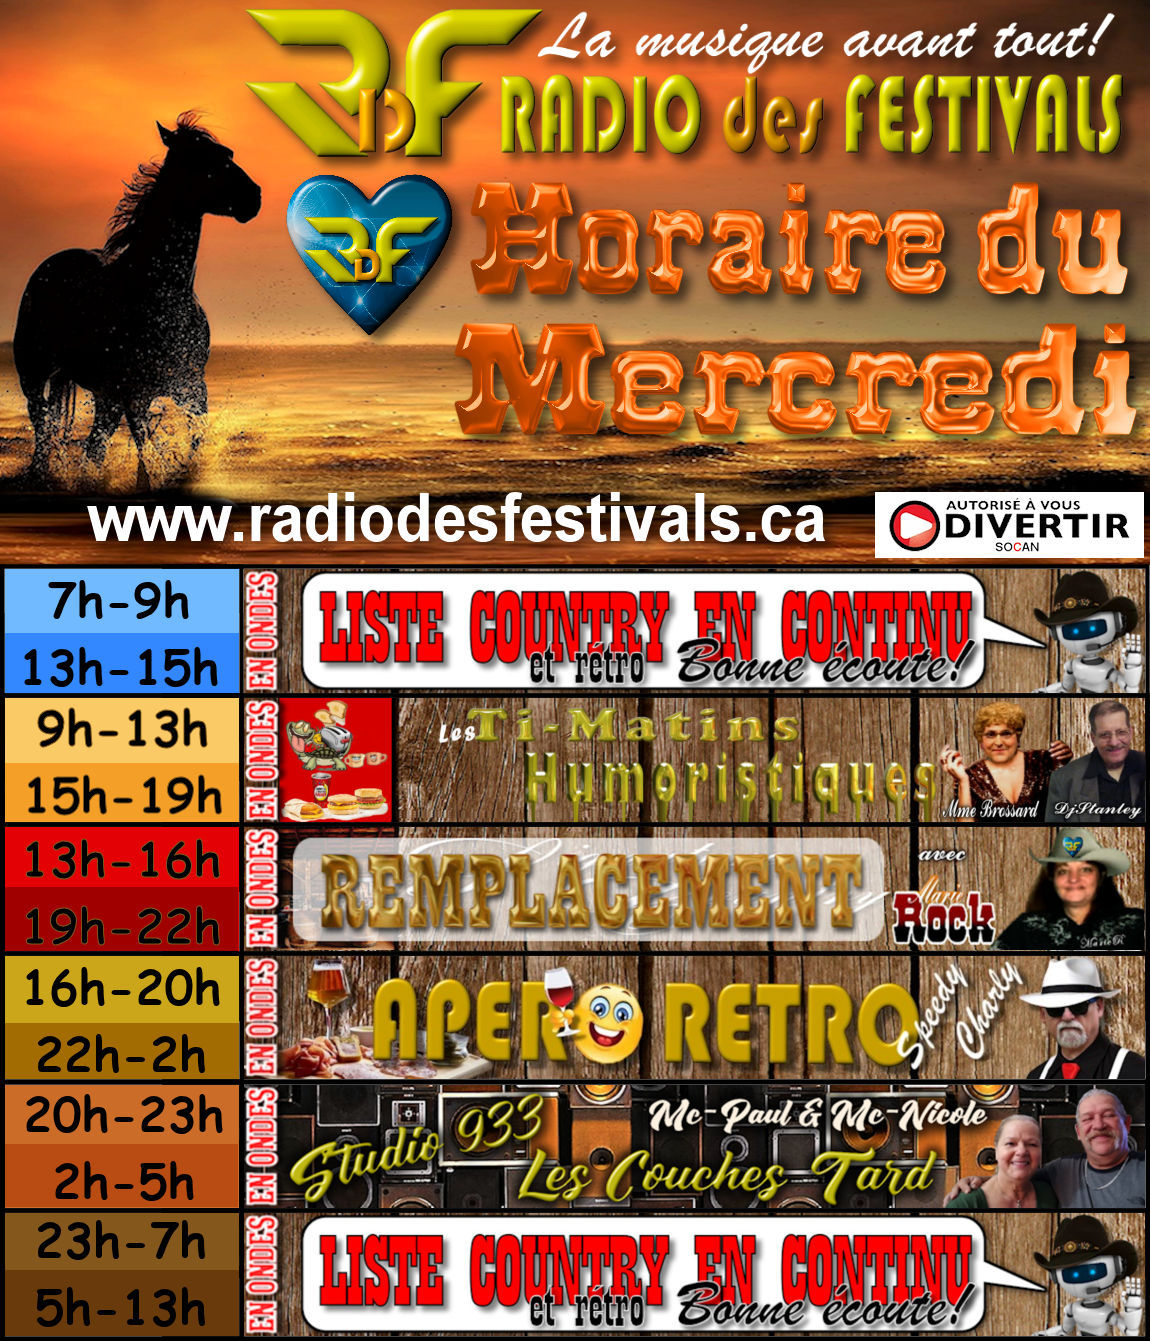 horaire du Mercredi de la radio des festivals